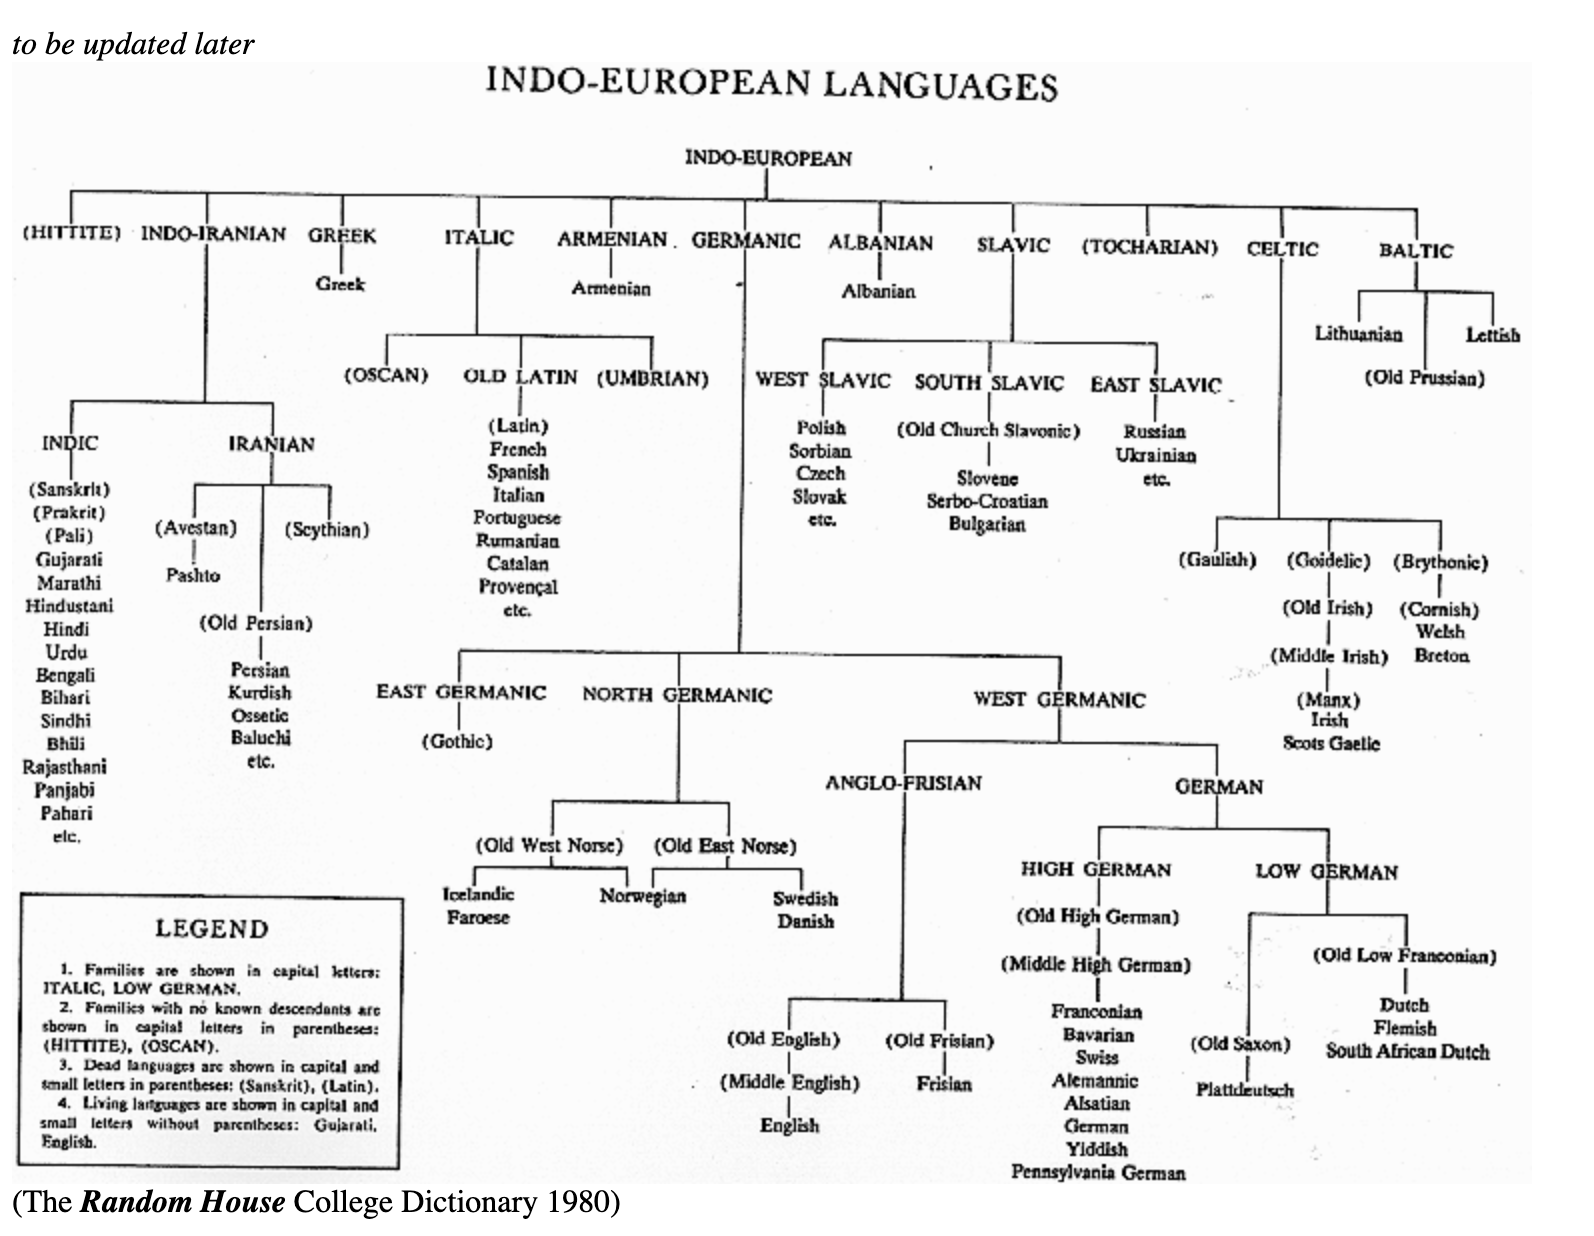 Какие группы языков относятся к индоевропейской семье